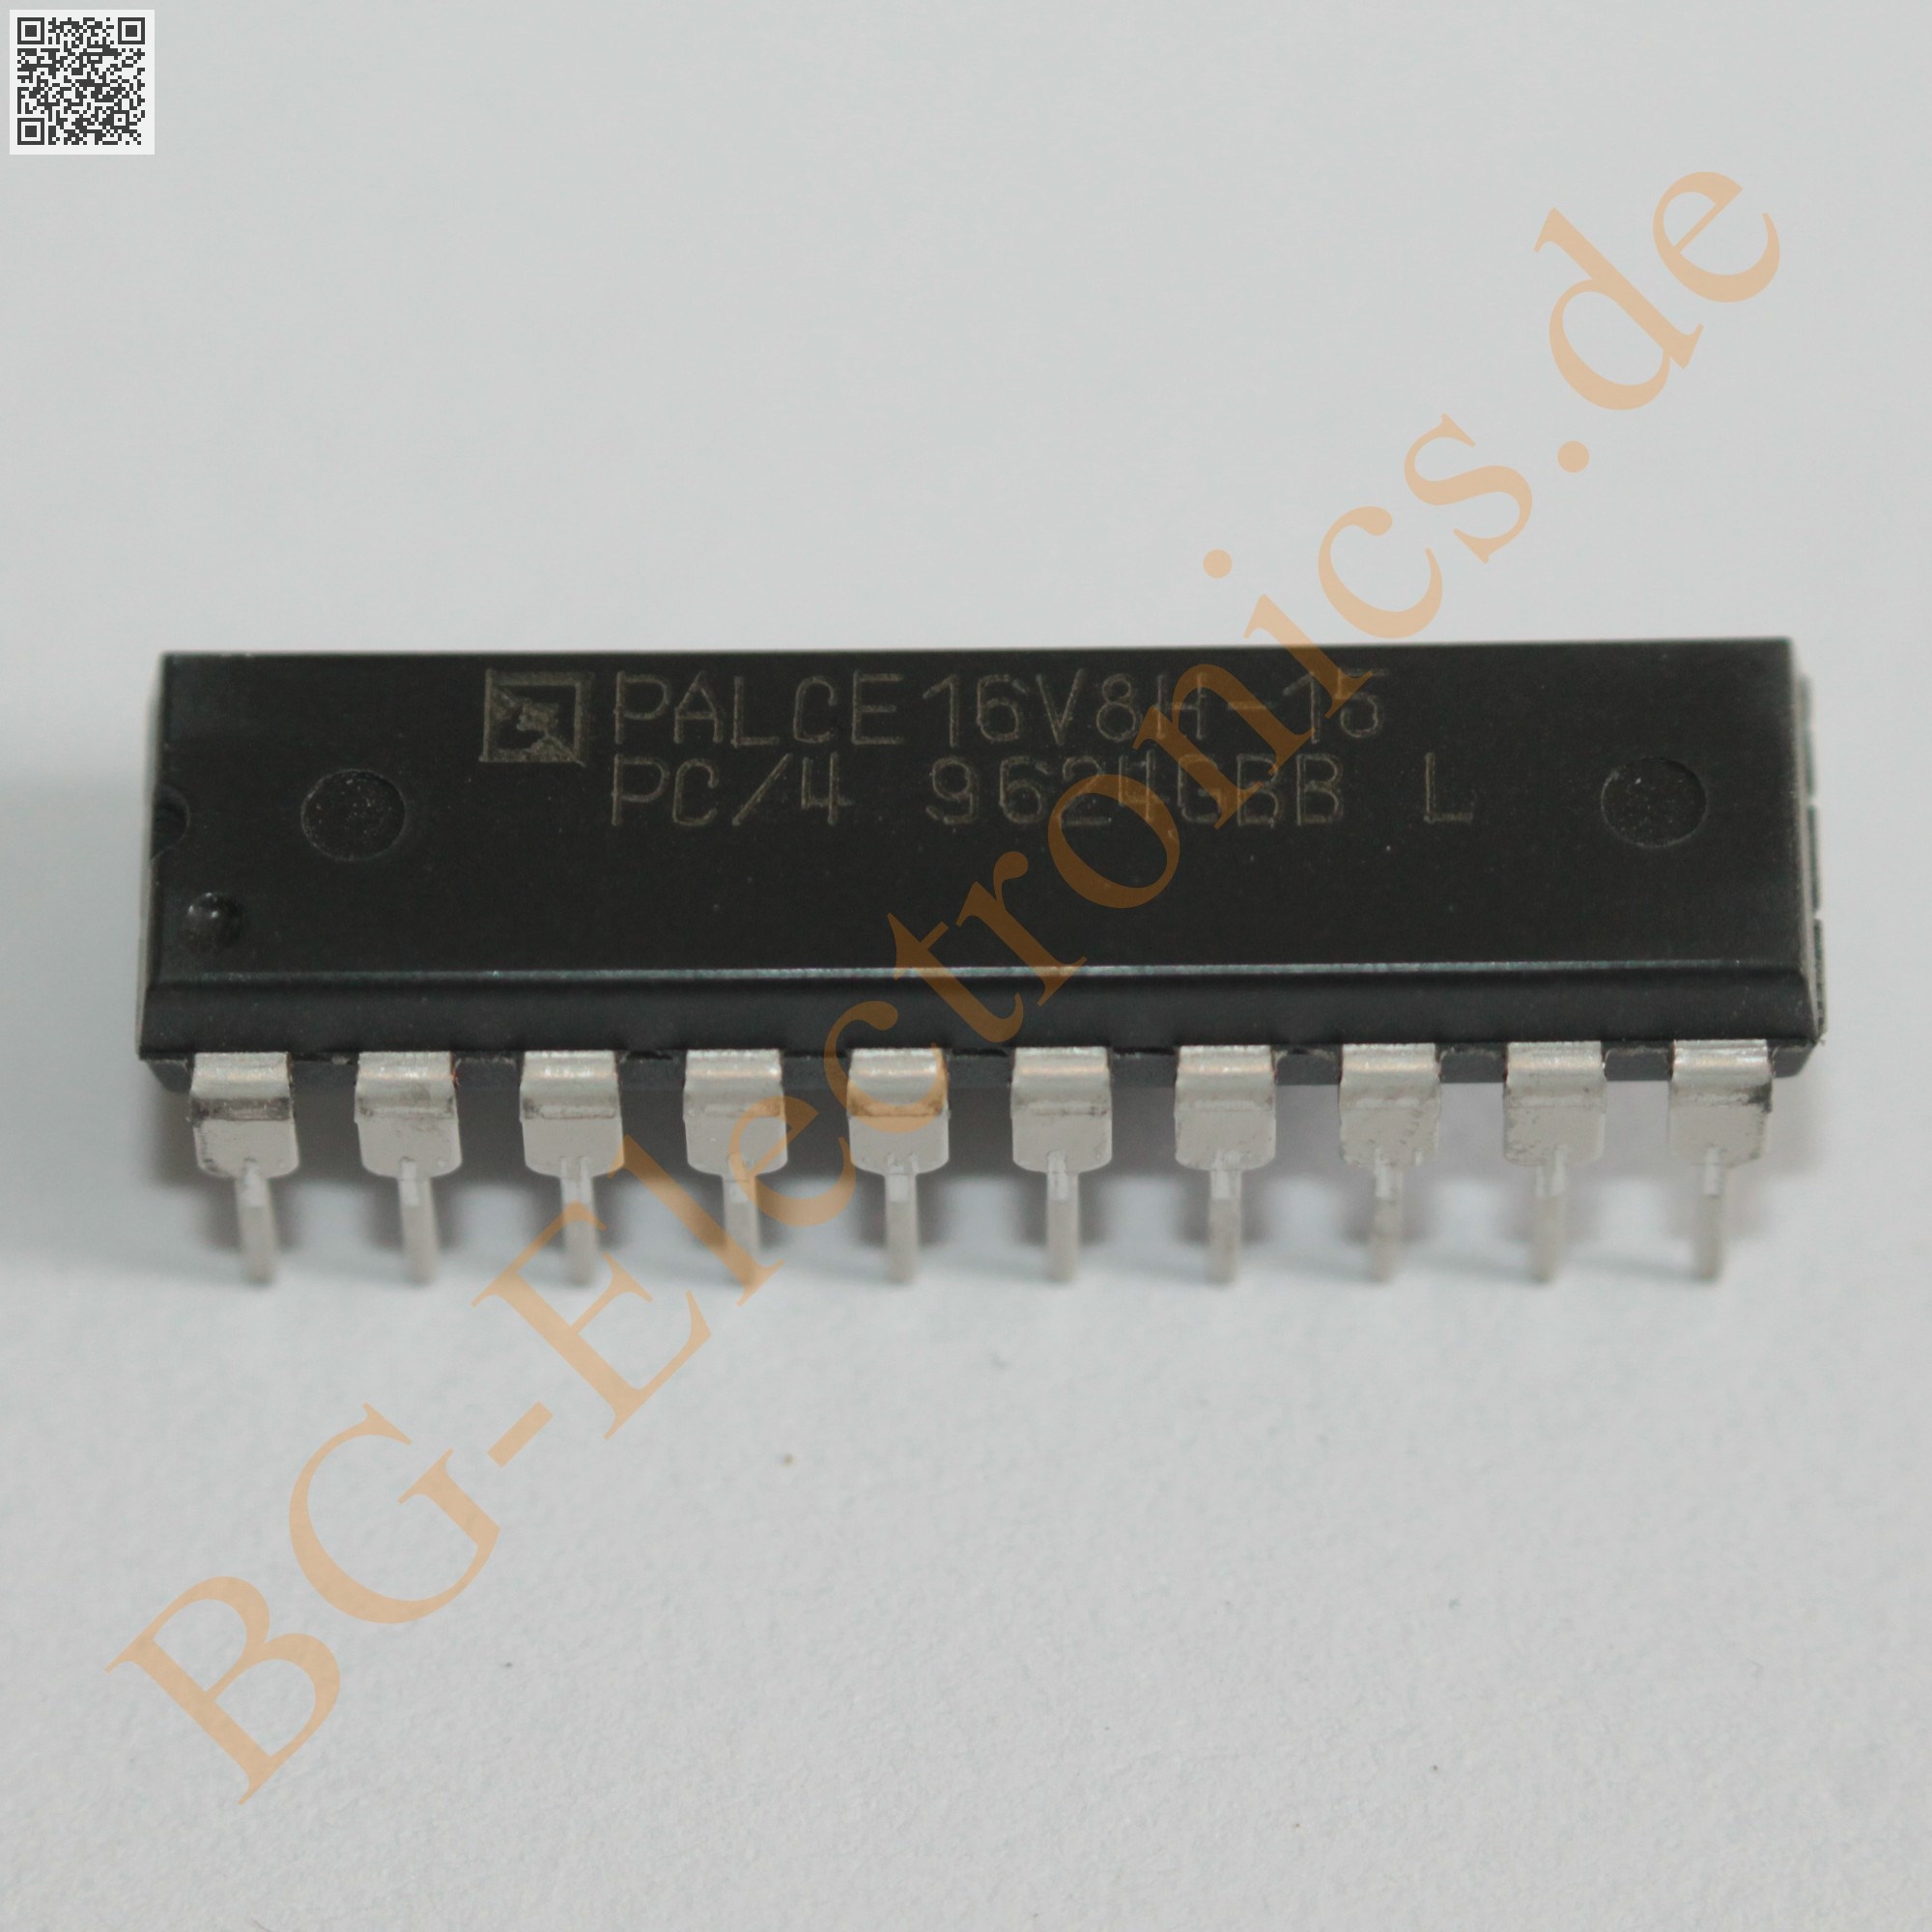 1 Stück/1 piece  IMSG176P-80S COLOUR LOOK-UP TABLE IC 80MHz DIP28 VGA NEW ~